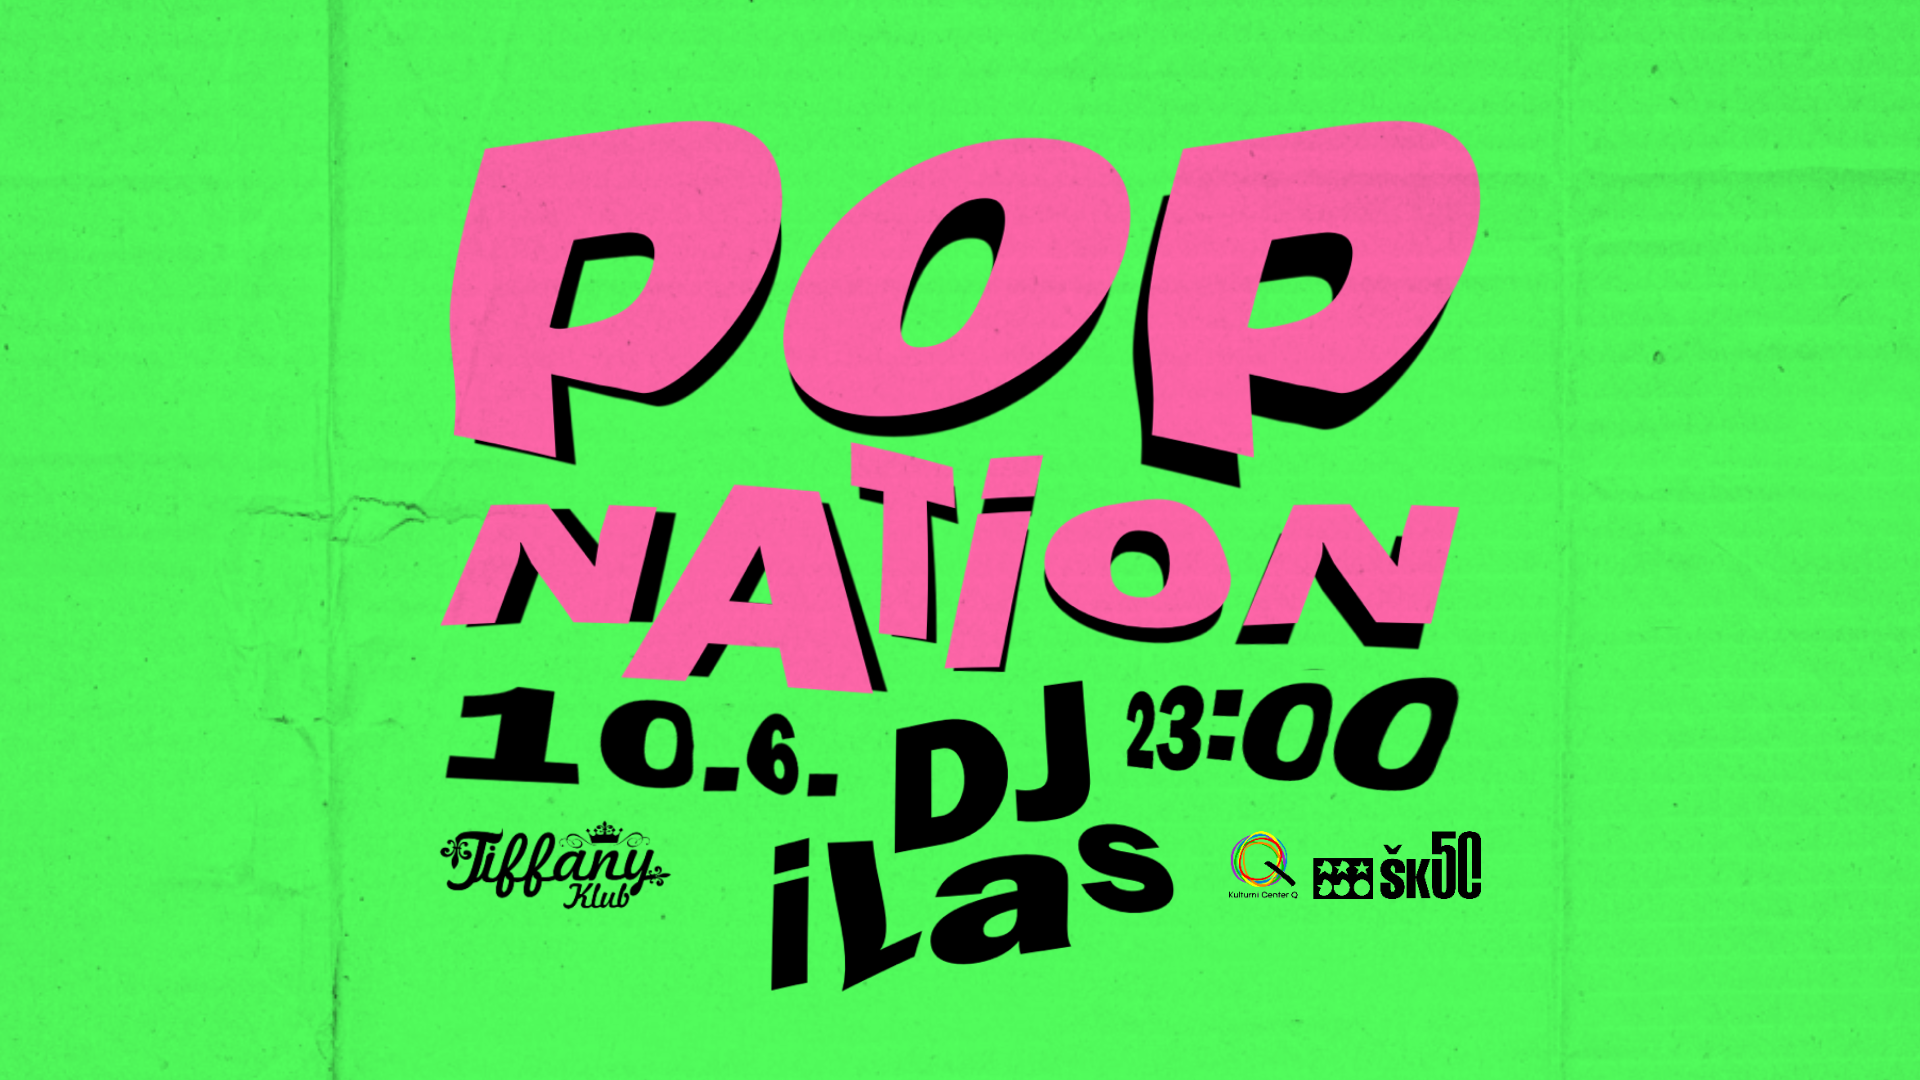 pop nation